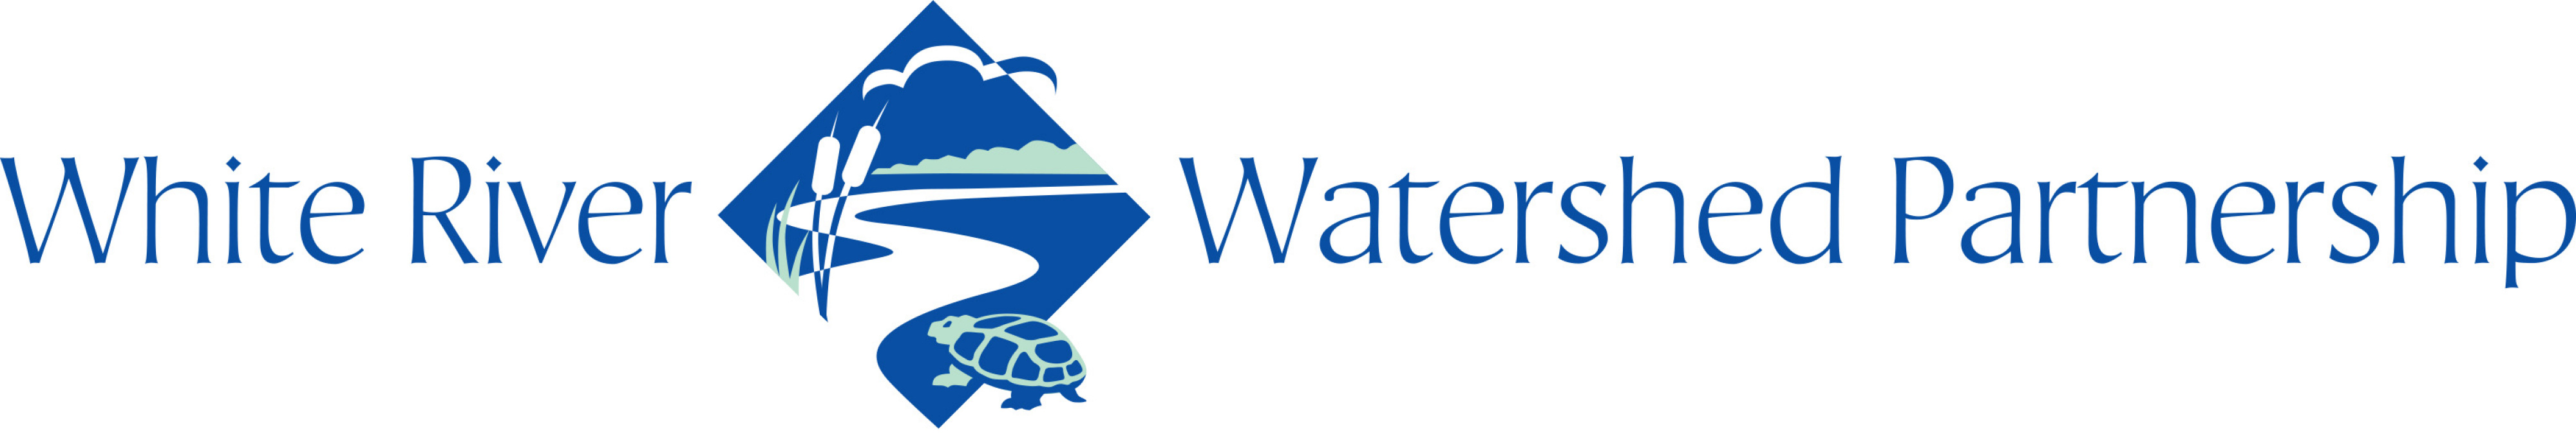 WRWP logo wide